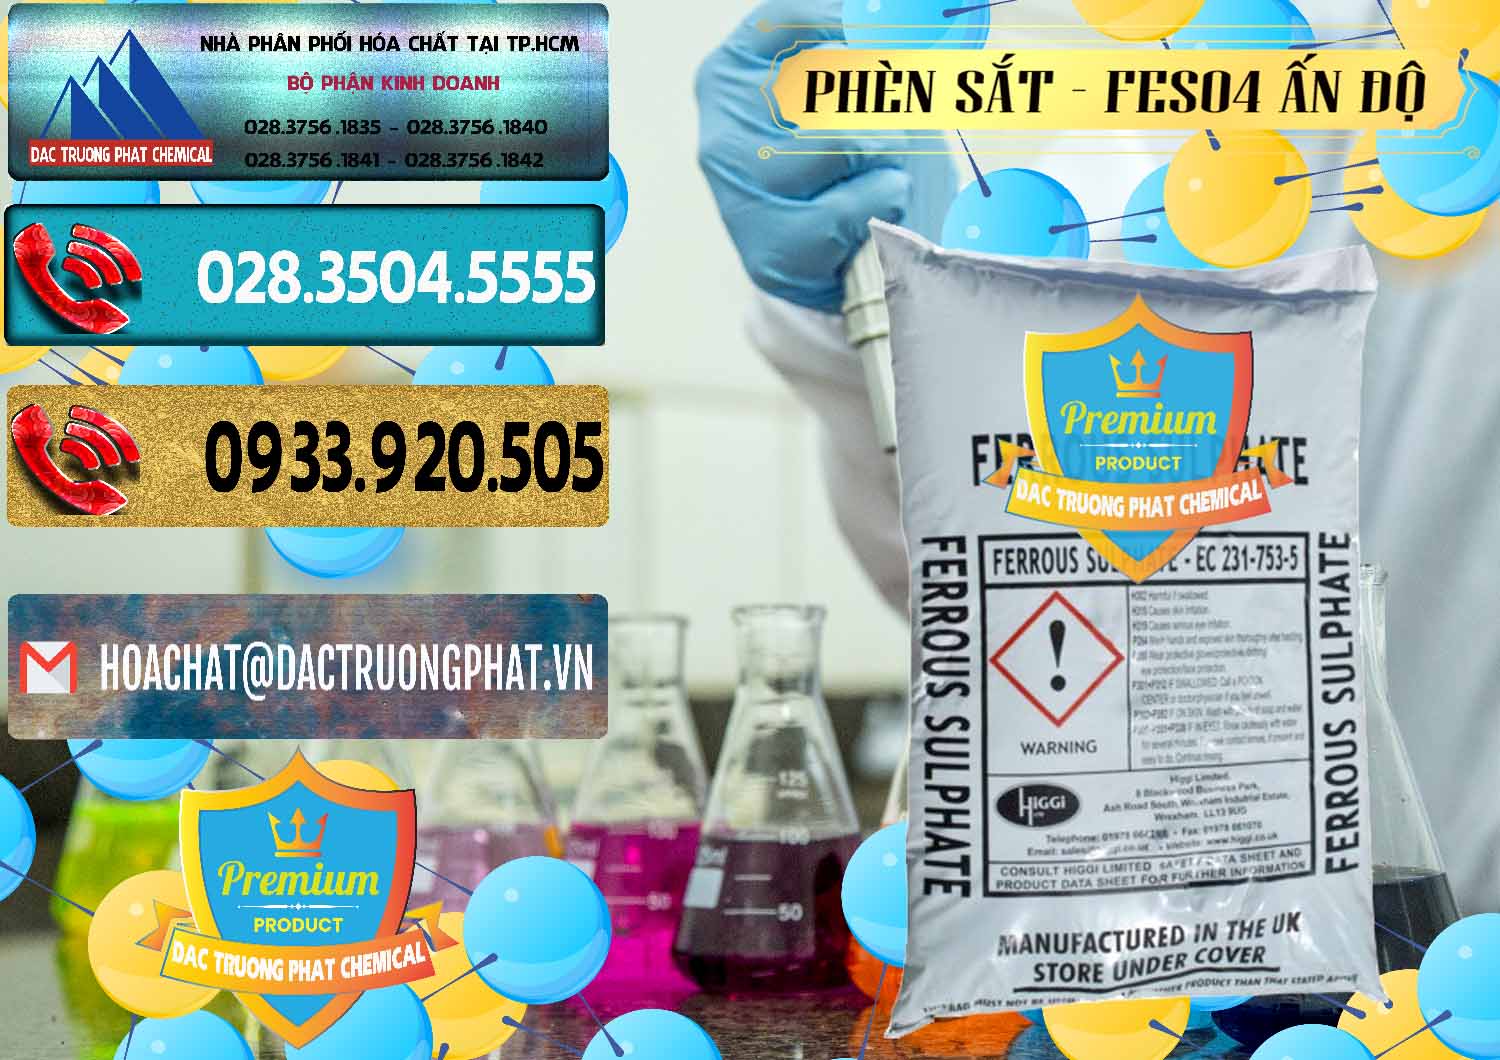 Công ty chuyên cung ứng và bán Phèn Sắt - FeSO4.7H2O Ấn Độ India - 0354 - Nơi chuyên phân phối - kinh doanh hóa chất tại TP.HCM - hoachatdetnhuom.com